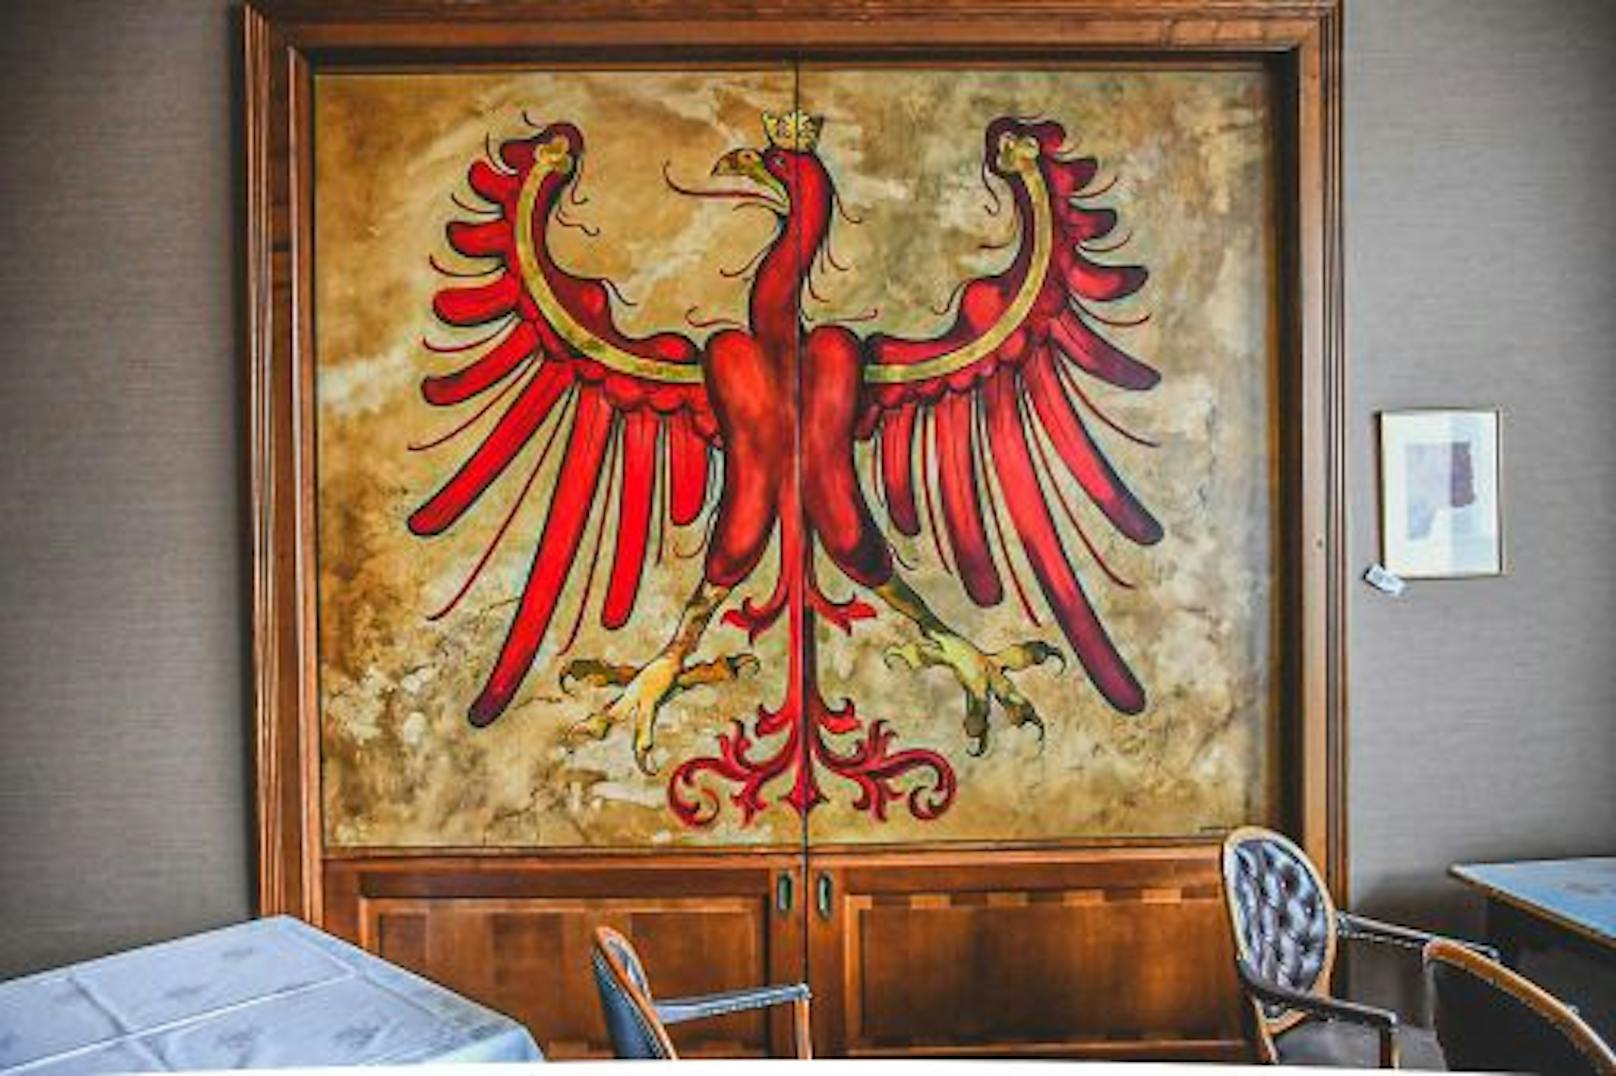 Das "Grand Hotel Europa Innsbruck" versteigert sein Inventar - darunter Gemälde, die Ausstattung der Hotelküche oder Jagdtrophäen.